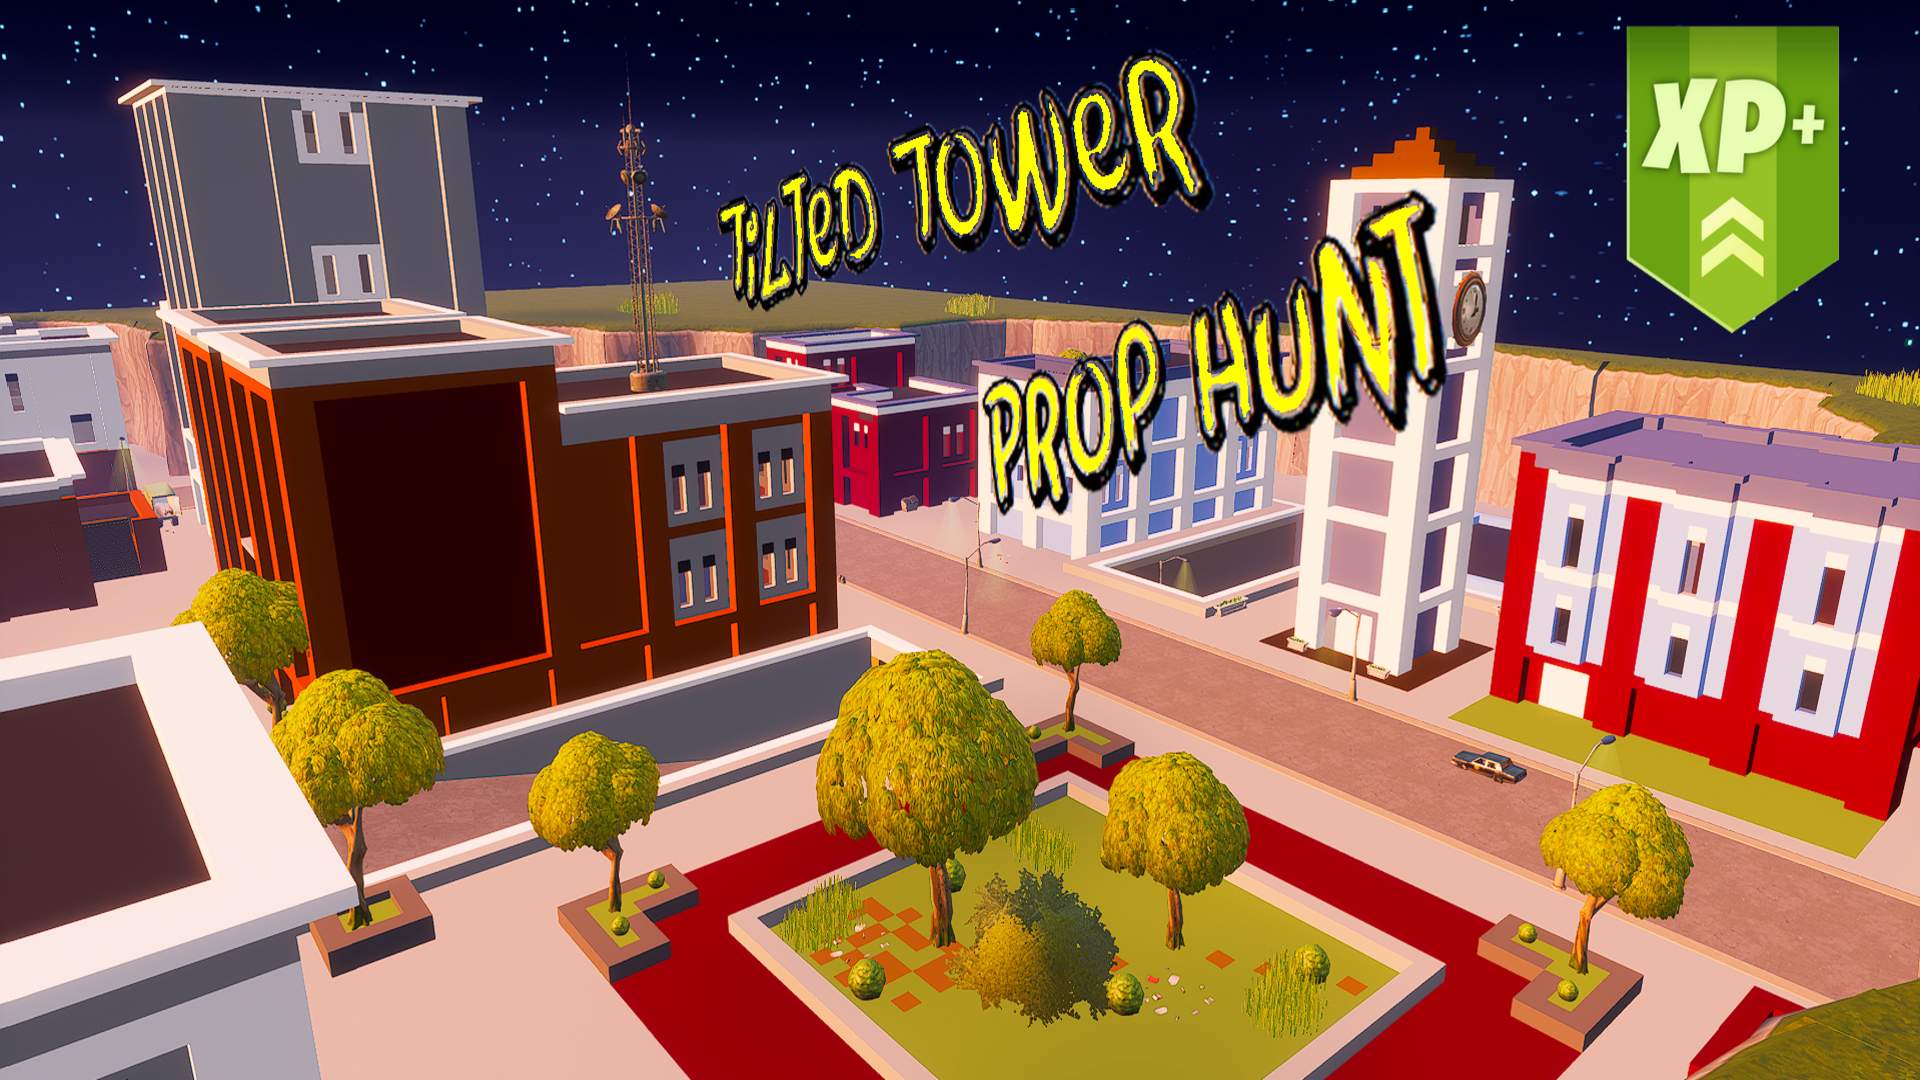 TILTED TOWER 2030 PROP HUNT